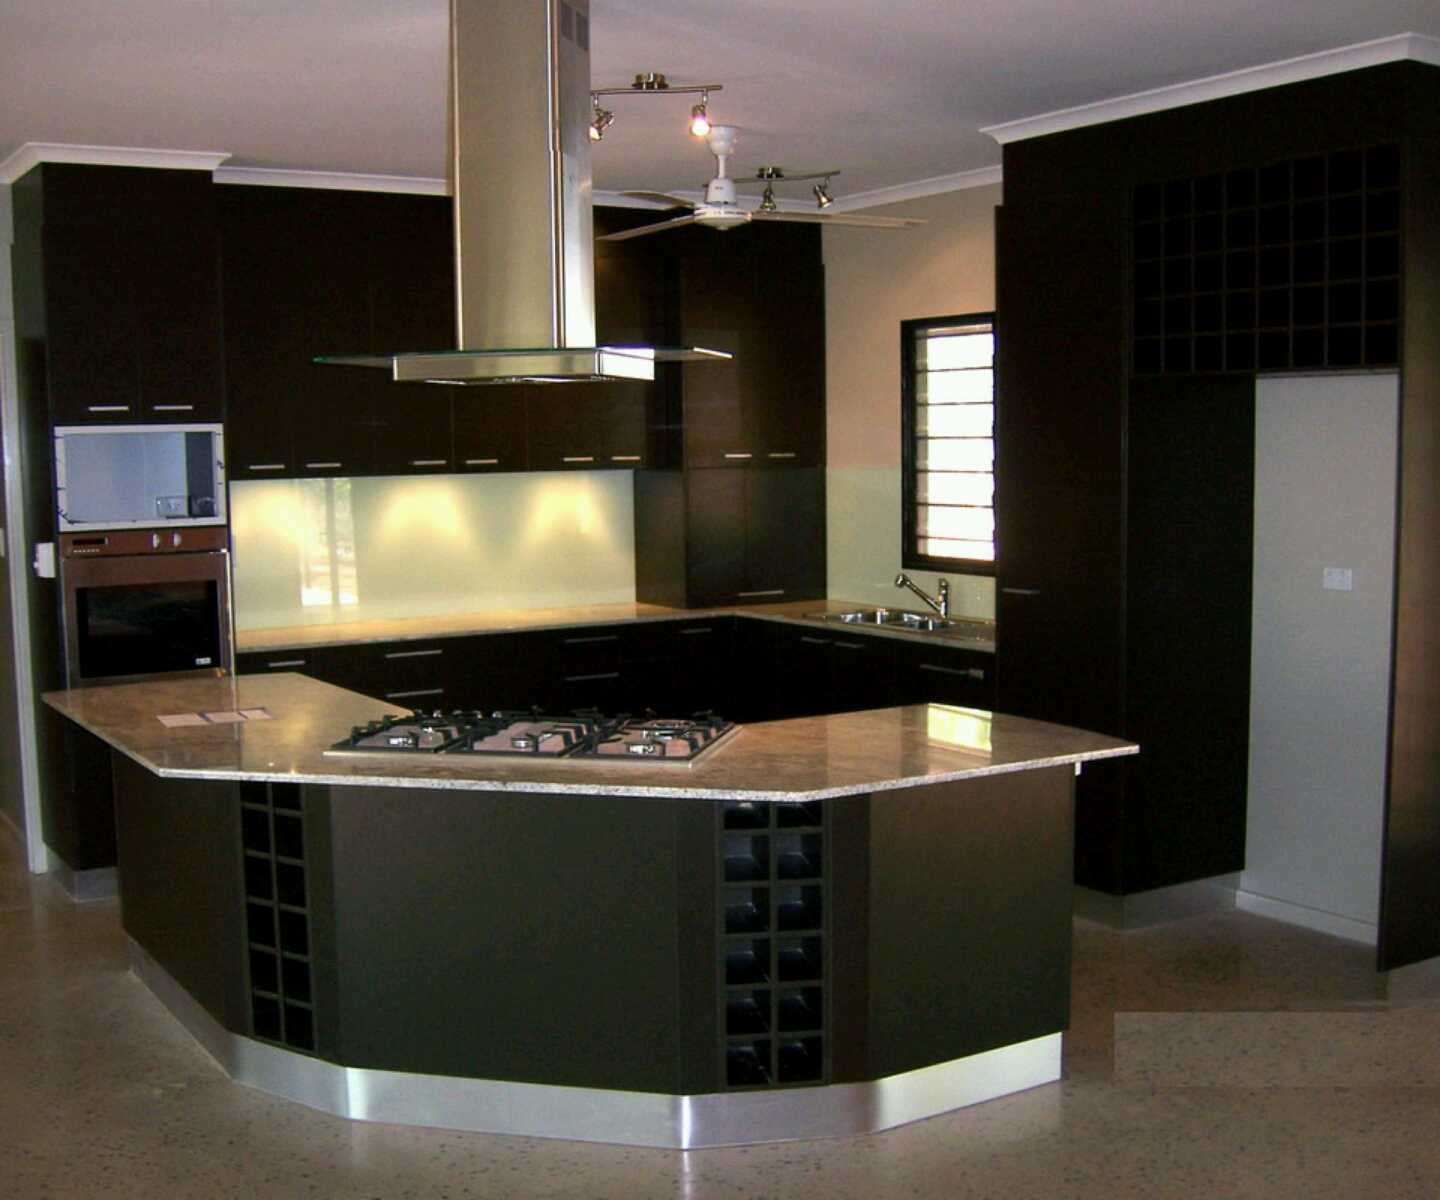 Modern kitchen cabinets designs best ideas. | Home Design